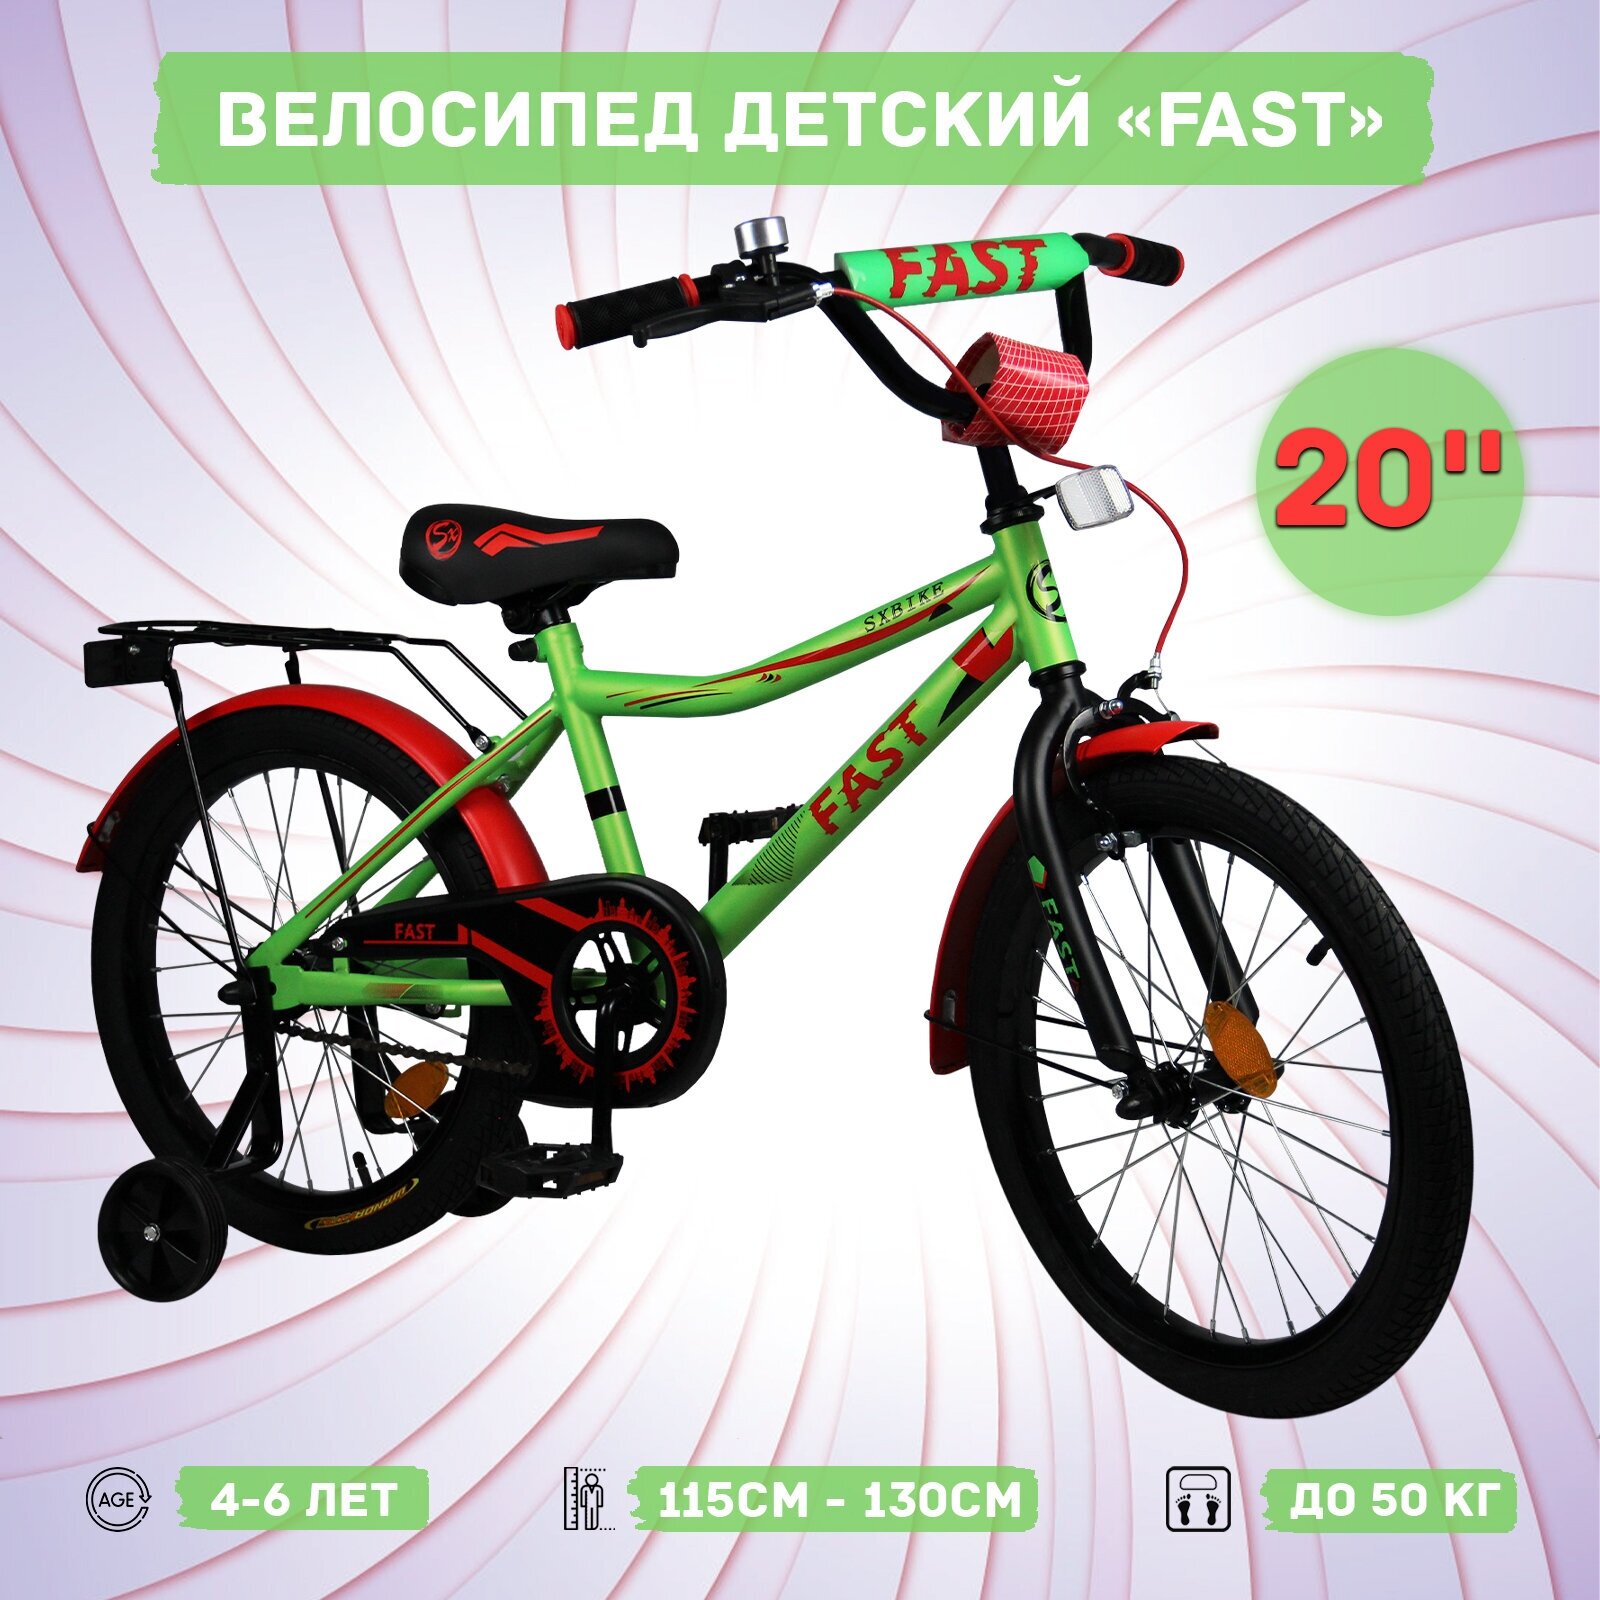 Велосипед детский Sx Bike Fast 20", зелено-красный